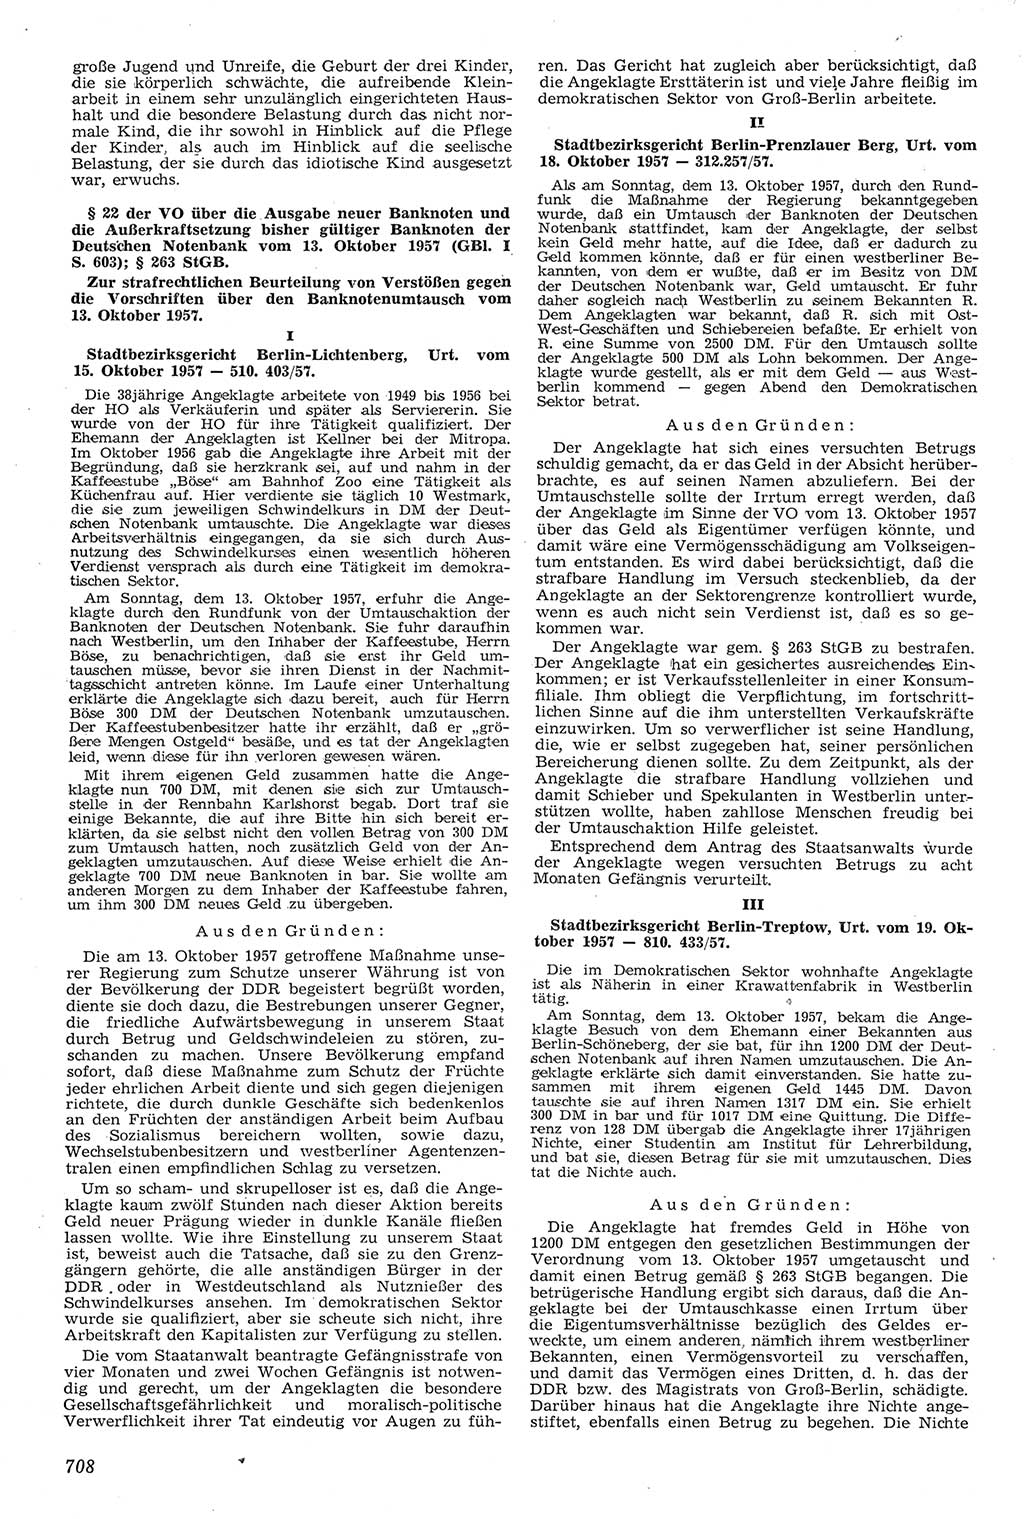 Neue Justiz (NJ), Zeitschrift für Recht und Rechtswissenschaft [Deutsche Demokratische Republik (DDR)], 11. Jahrgang 1957, Seite 708 (NJ DDR 1957, S. 708)